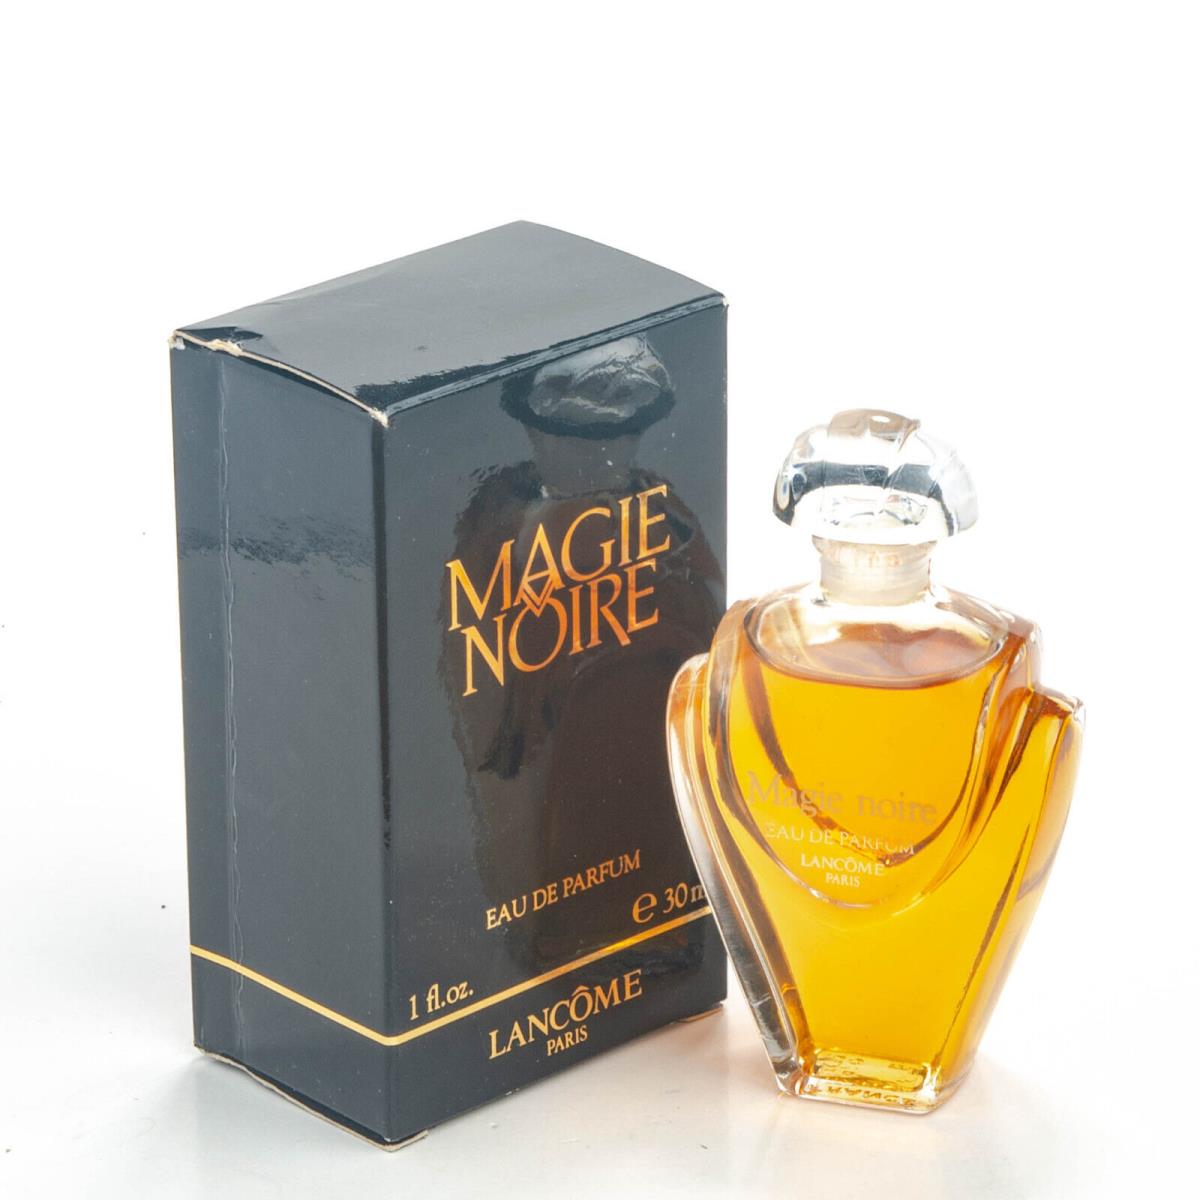 Lancome Magie Noire Eau de Parfum 30ml Splash Edp Vintage Women Perfume